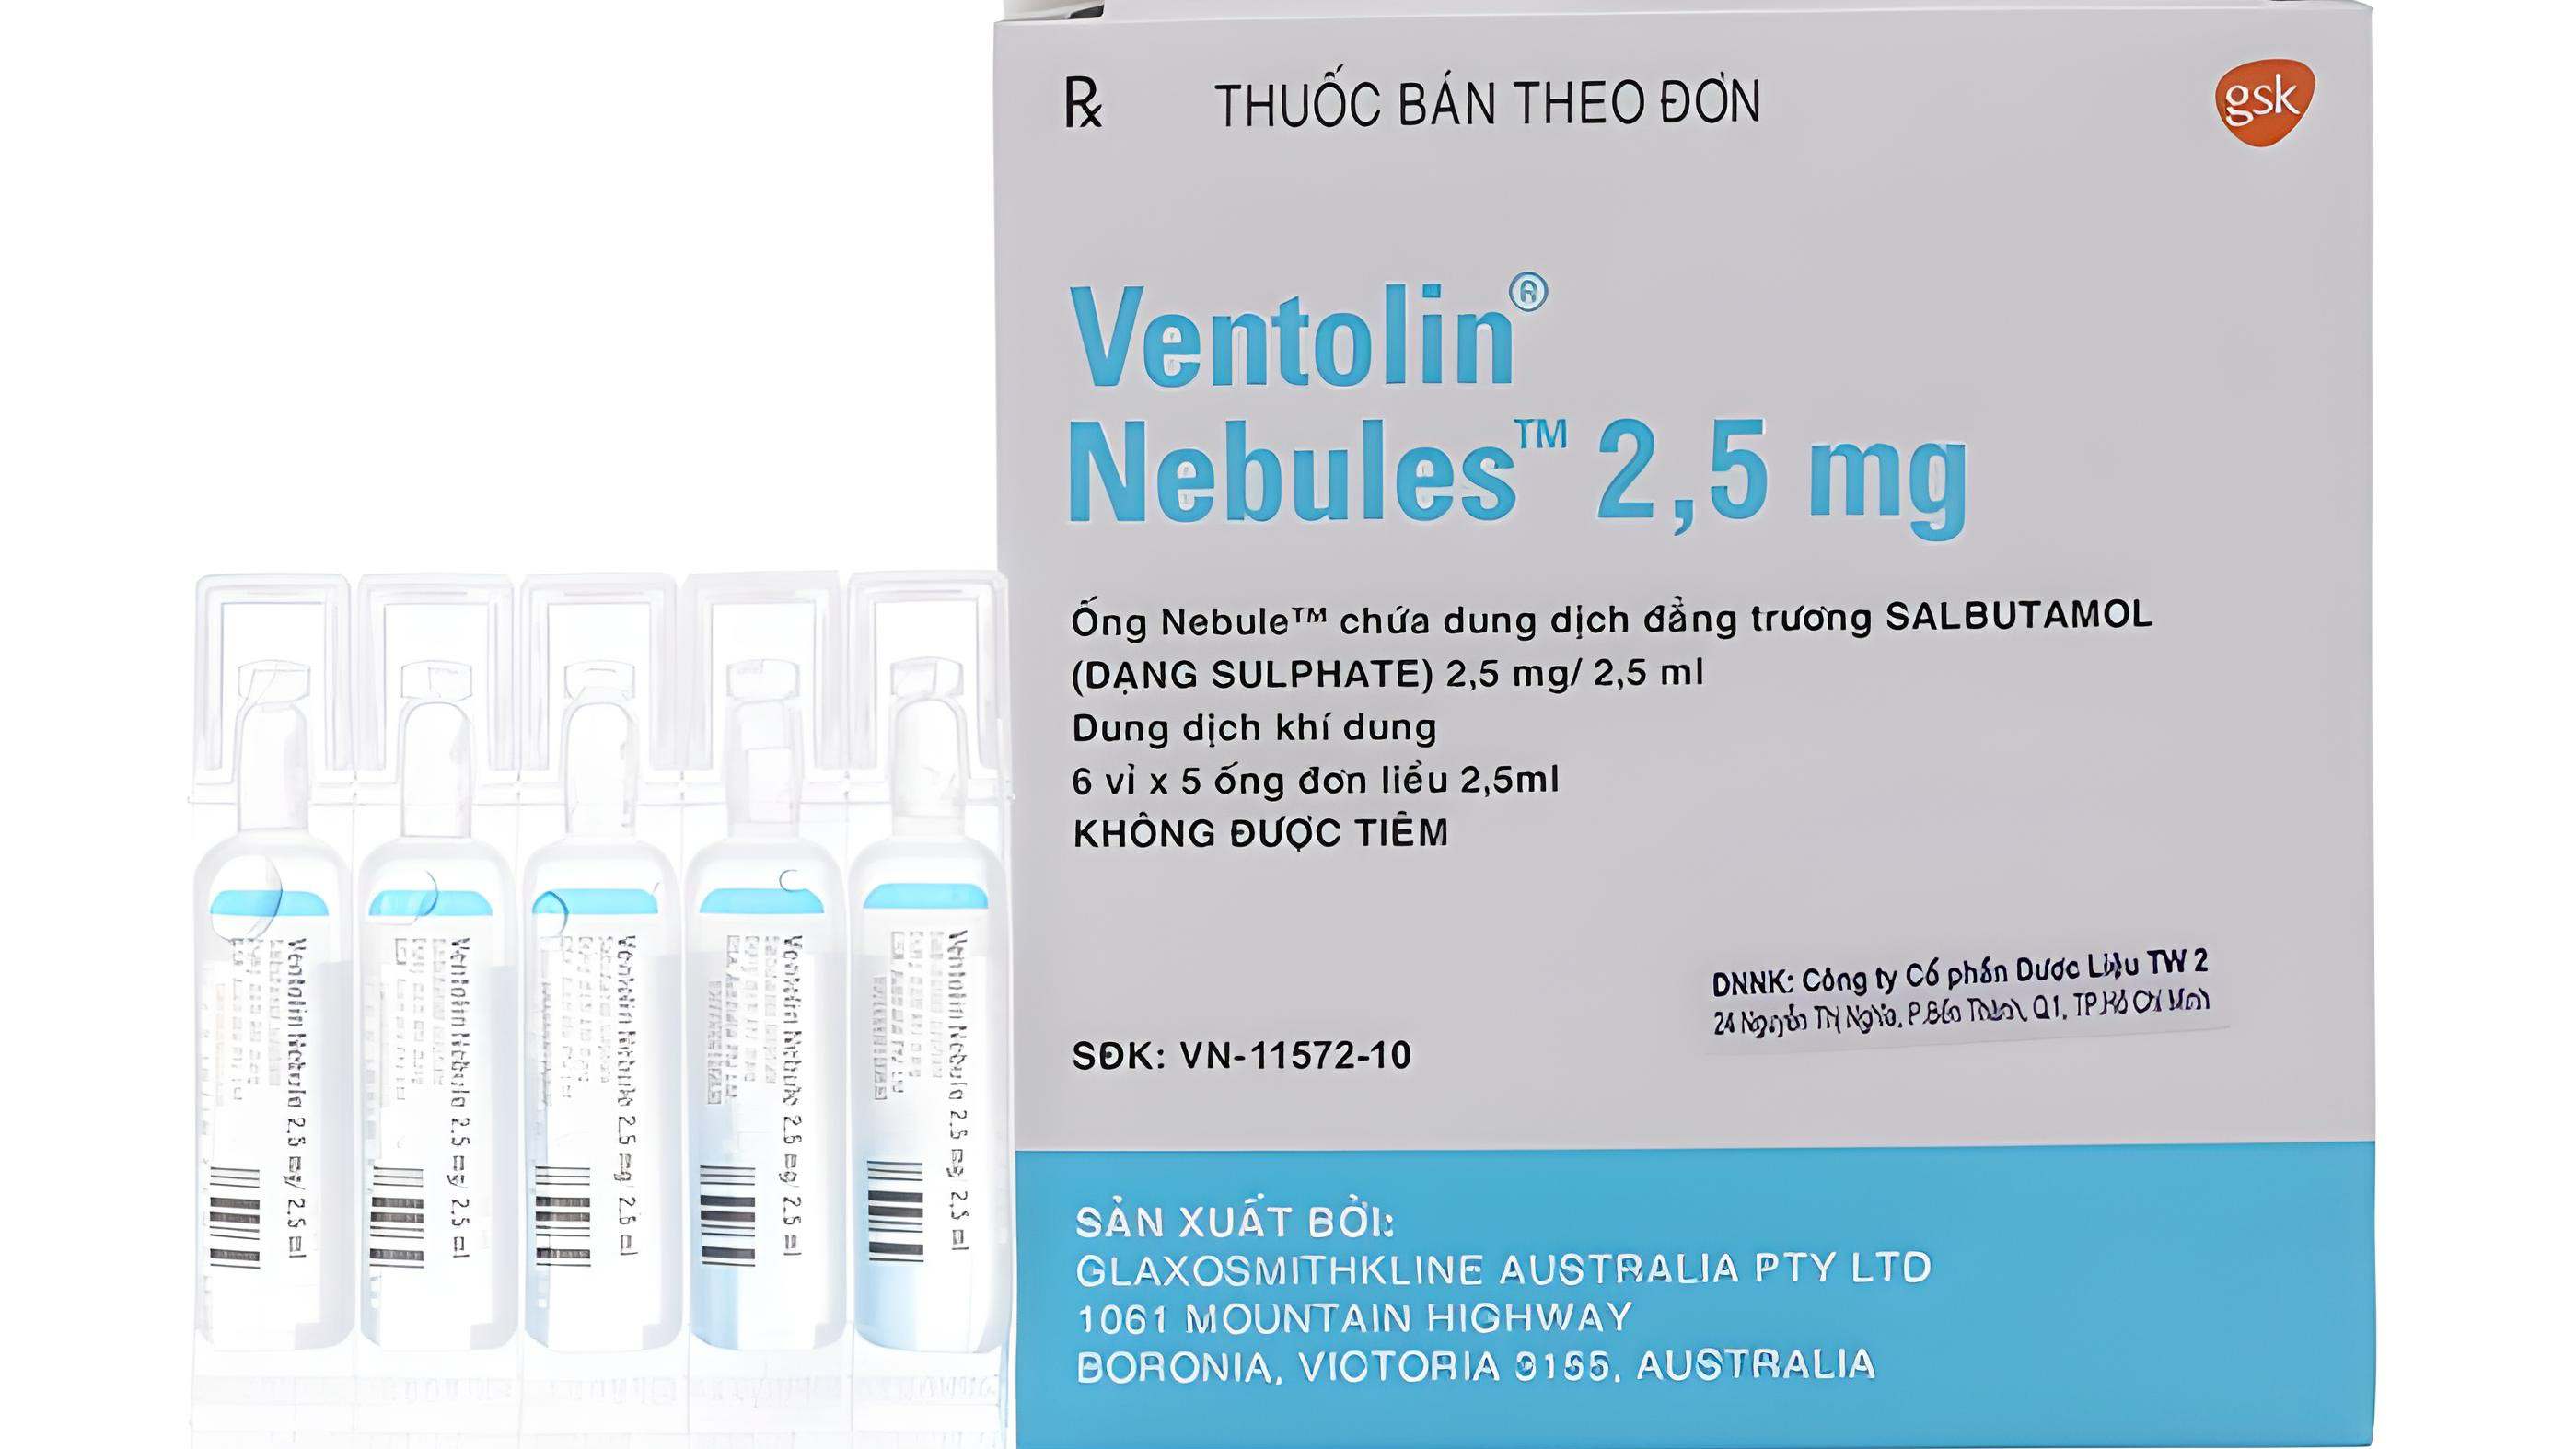 Thuốc Ventolin 2.5mg có tác dụng gì trong điều trị bệnh?
